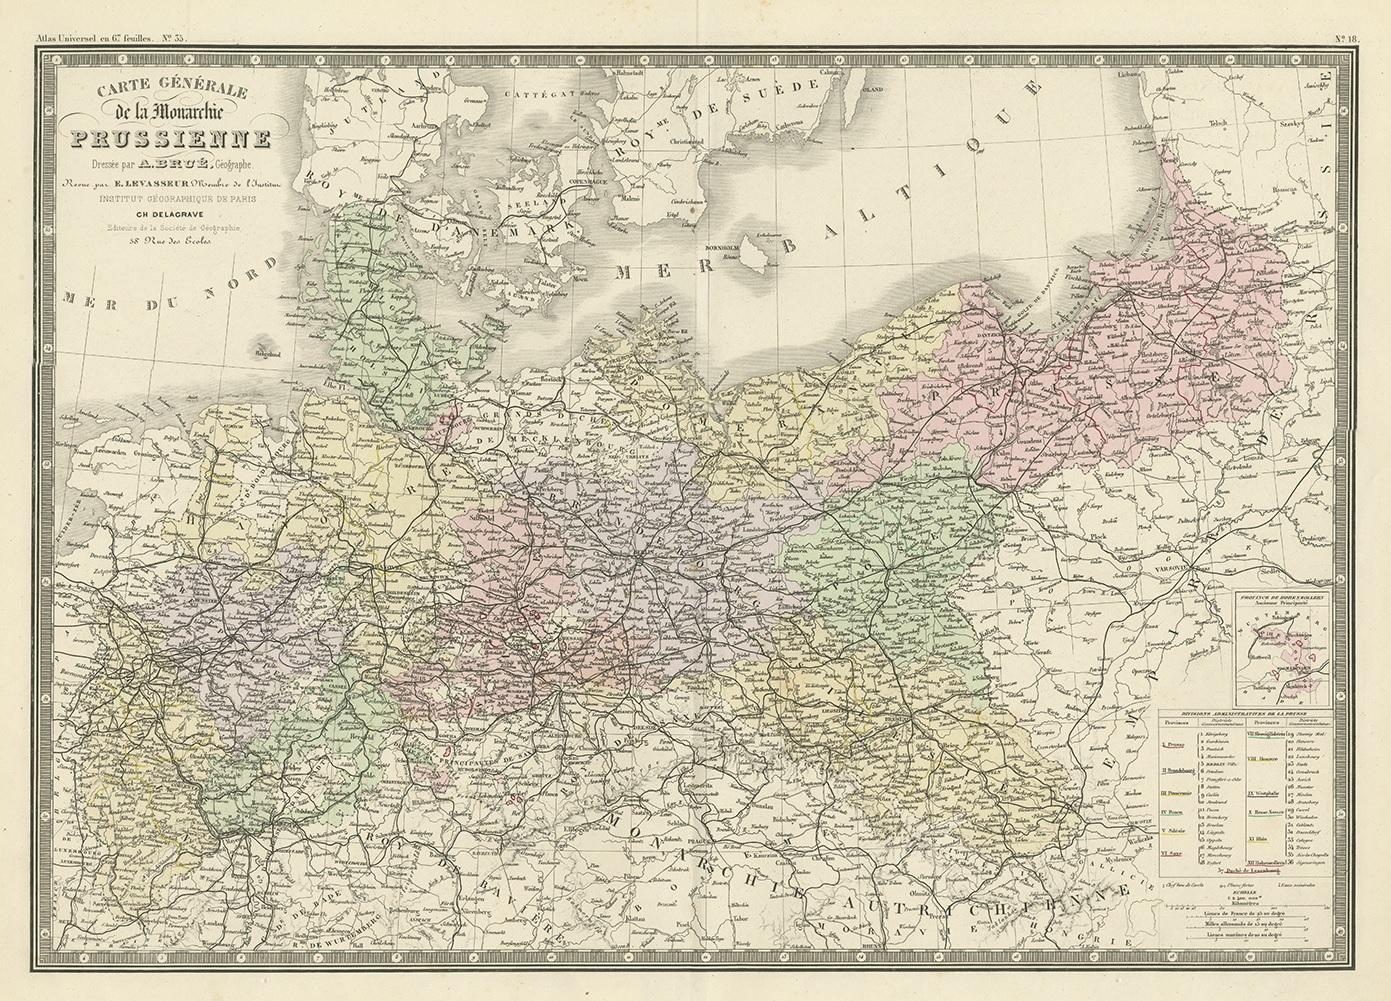 Antique map titled 'Carte générale de la Monarchie Prussienne (..)'. Large map of the Prussian Monarchy. This map originates from 'Atlas de Géographie Moderne Physique et Politique' by A. Levasseur. Published 1875.